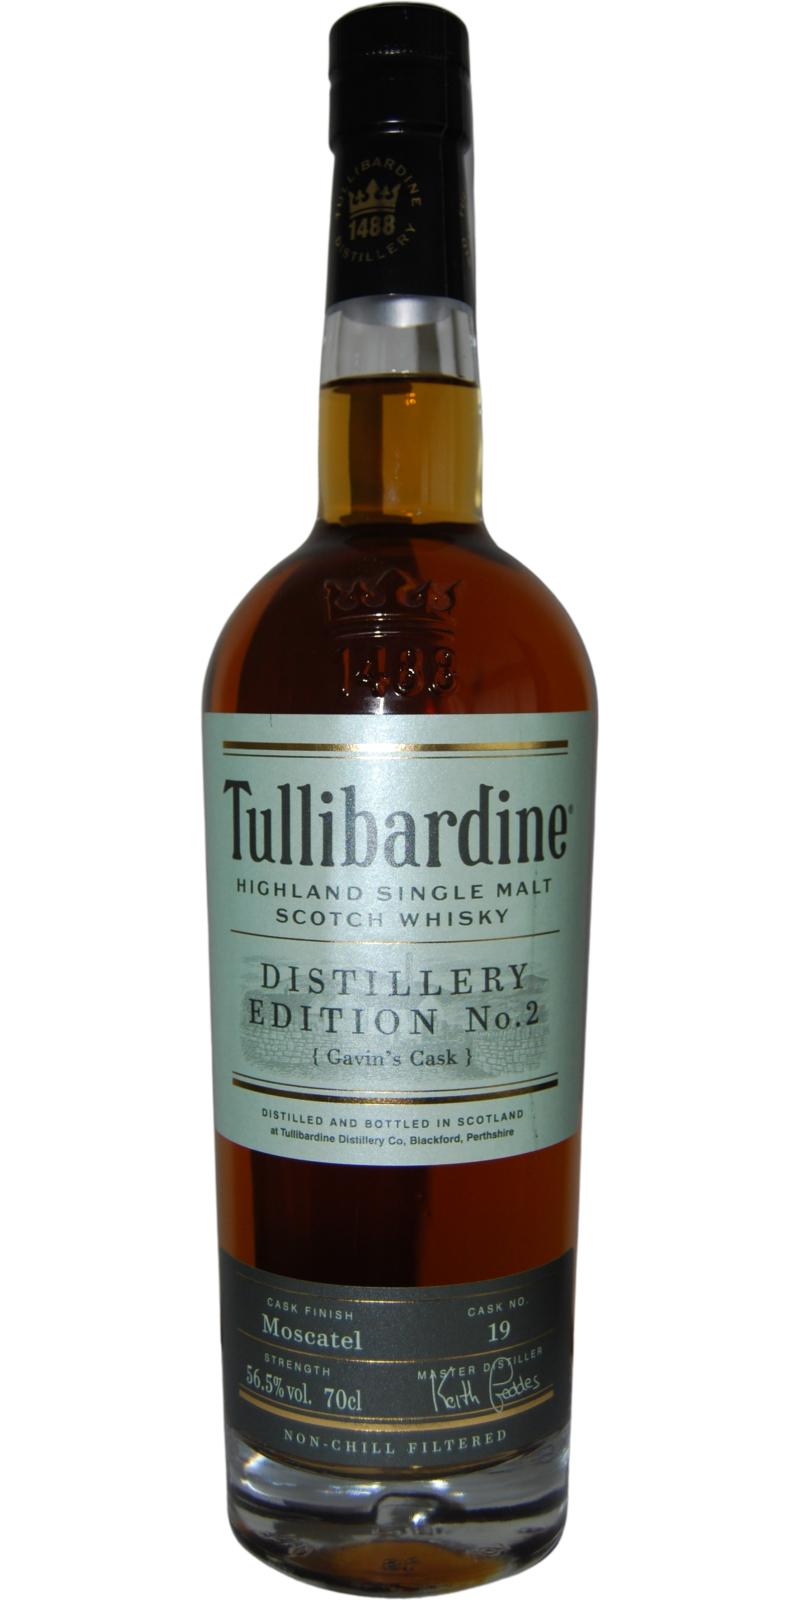 Tullibardine Distillery Edition No.2